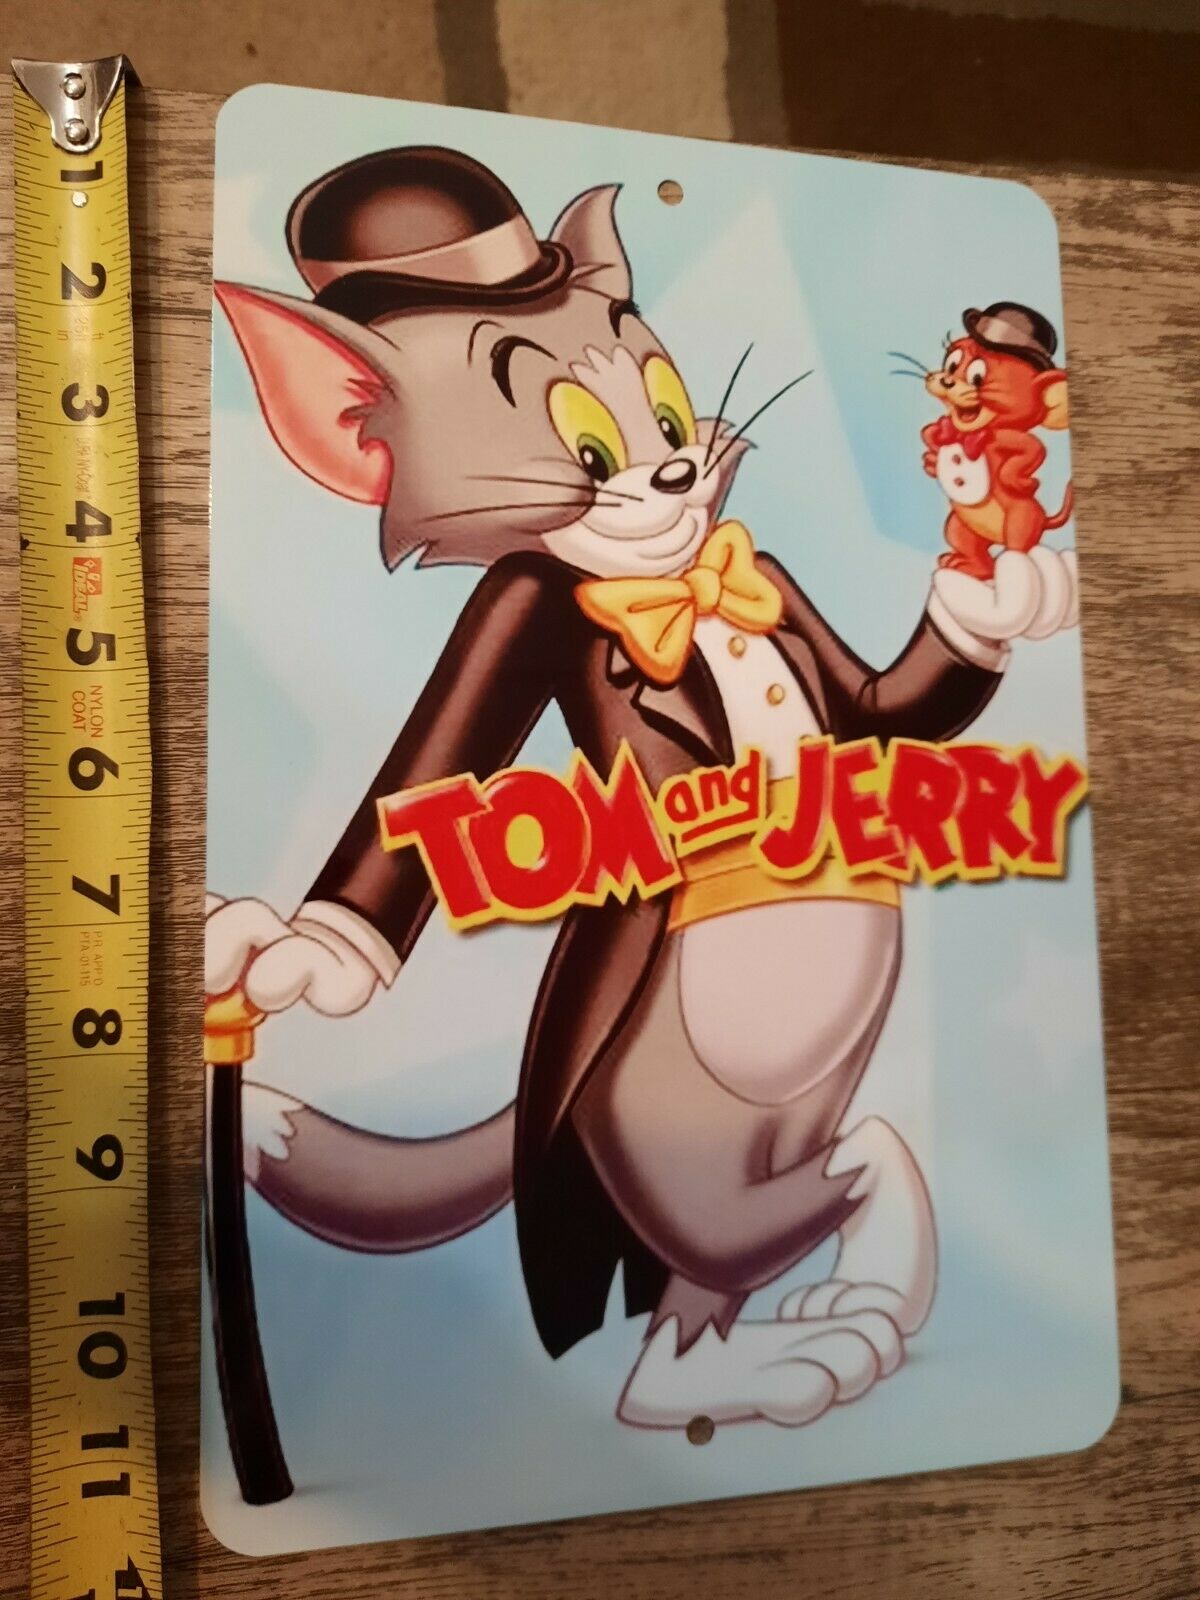 Tom & Jerry 8x12 Metal Wall Sign Hanna Barbera Classic Cartoon